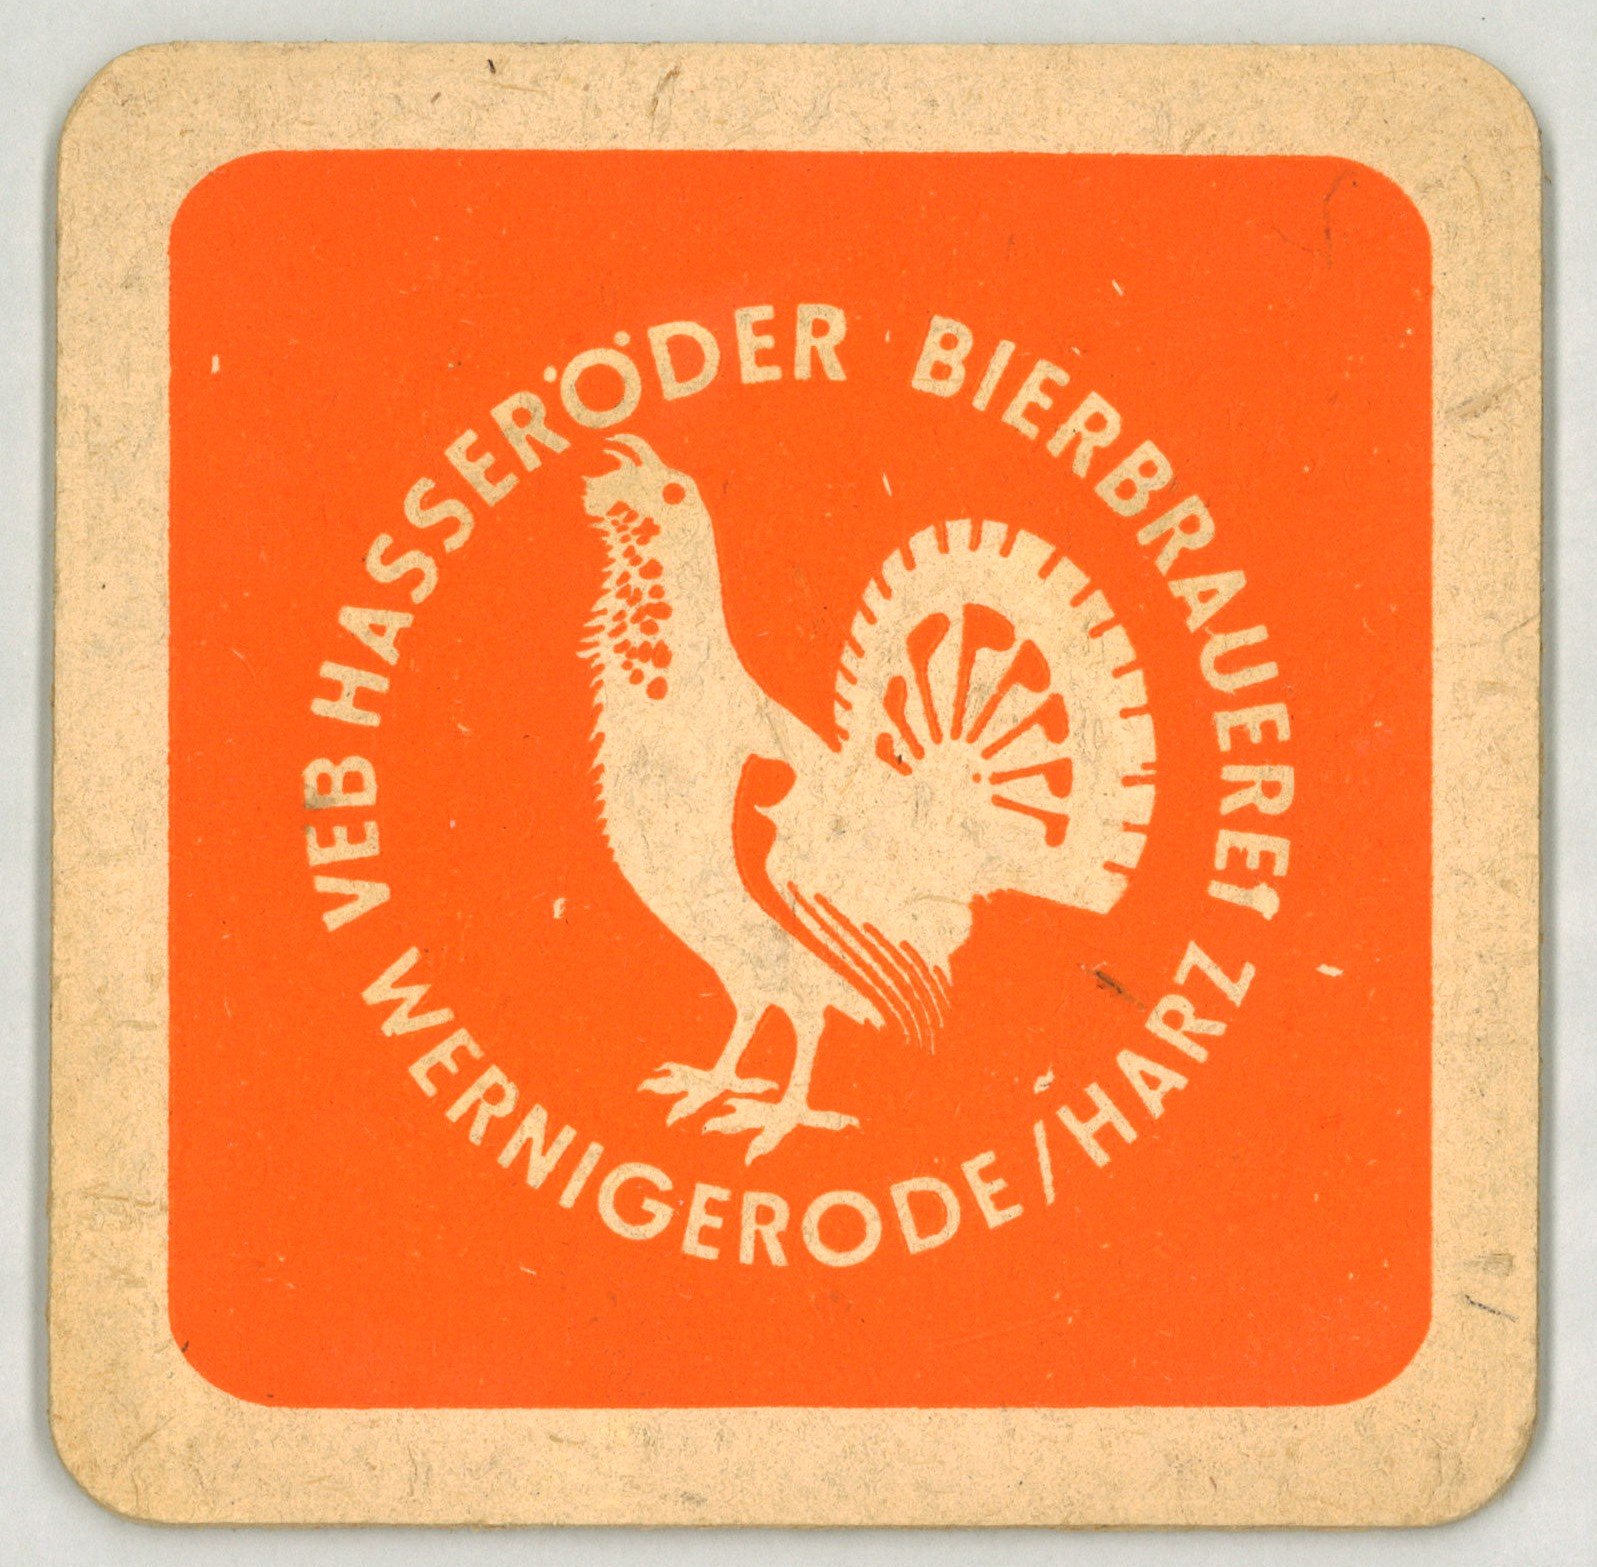 Wernigerode: VEB Hasseröder Bierbrauerei (Landesgeschichtliche Vereinigung für die Mark Brandenburg e.V., Archiv CC BY)